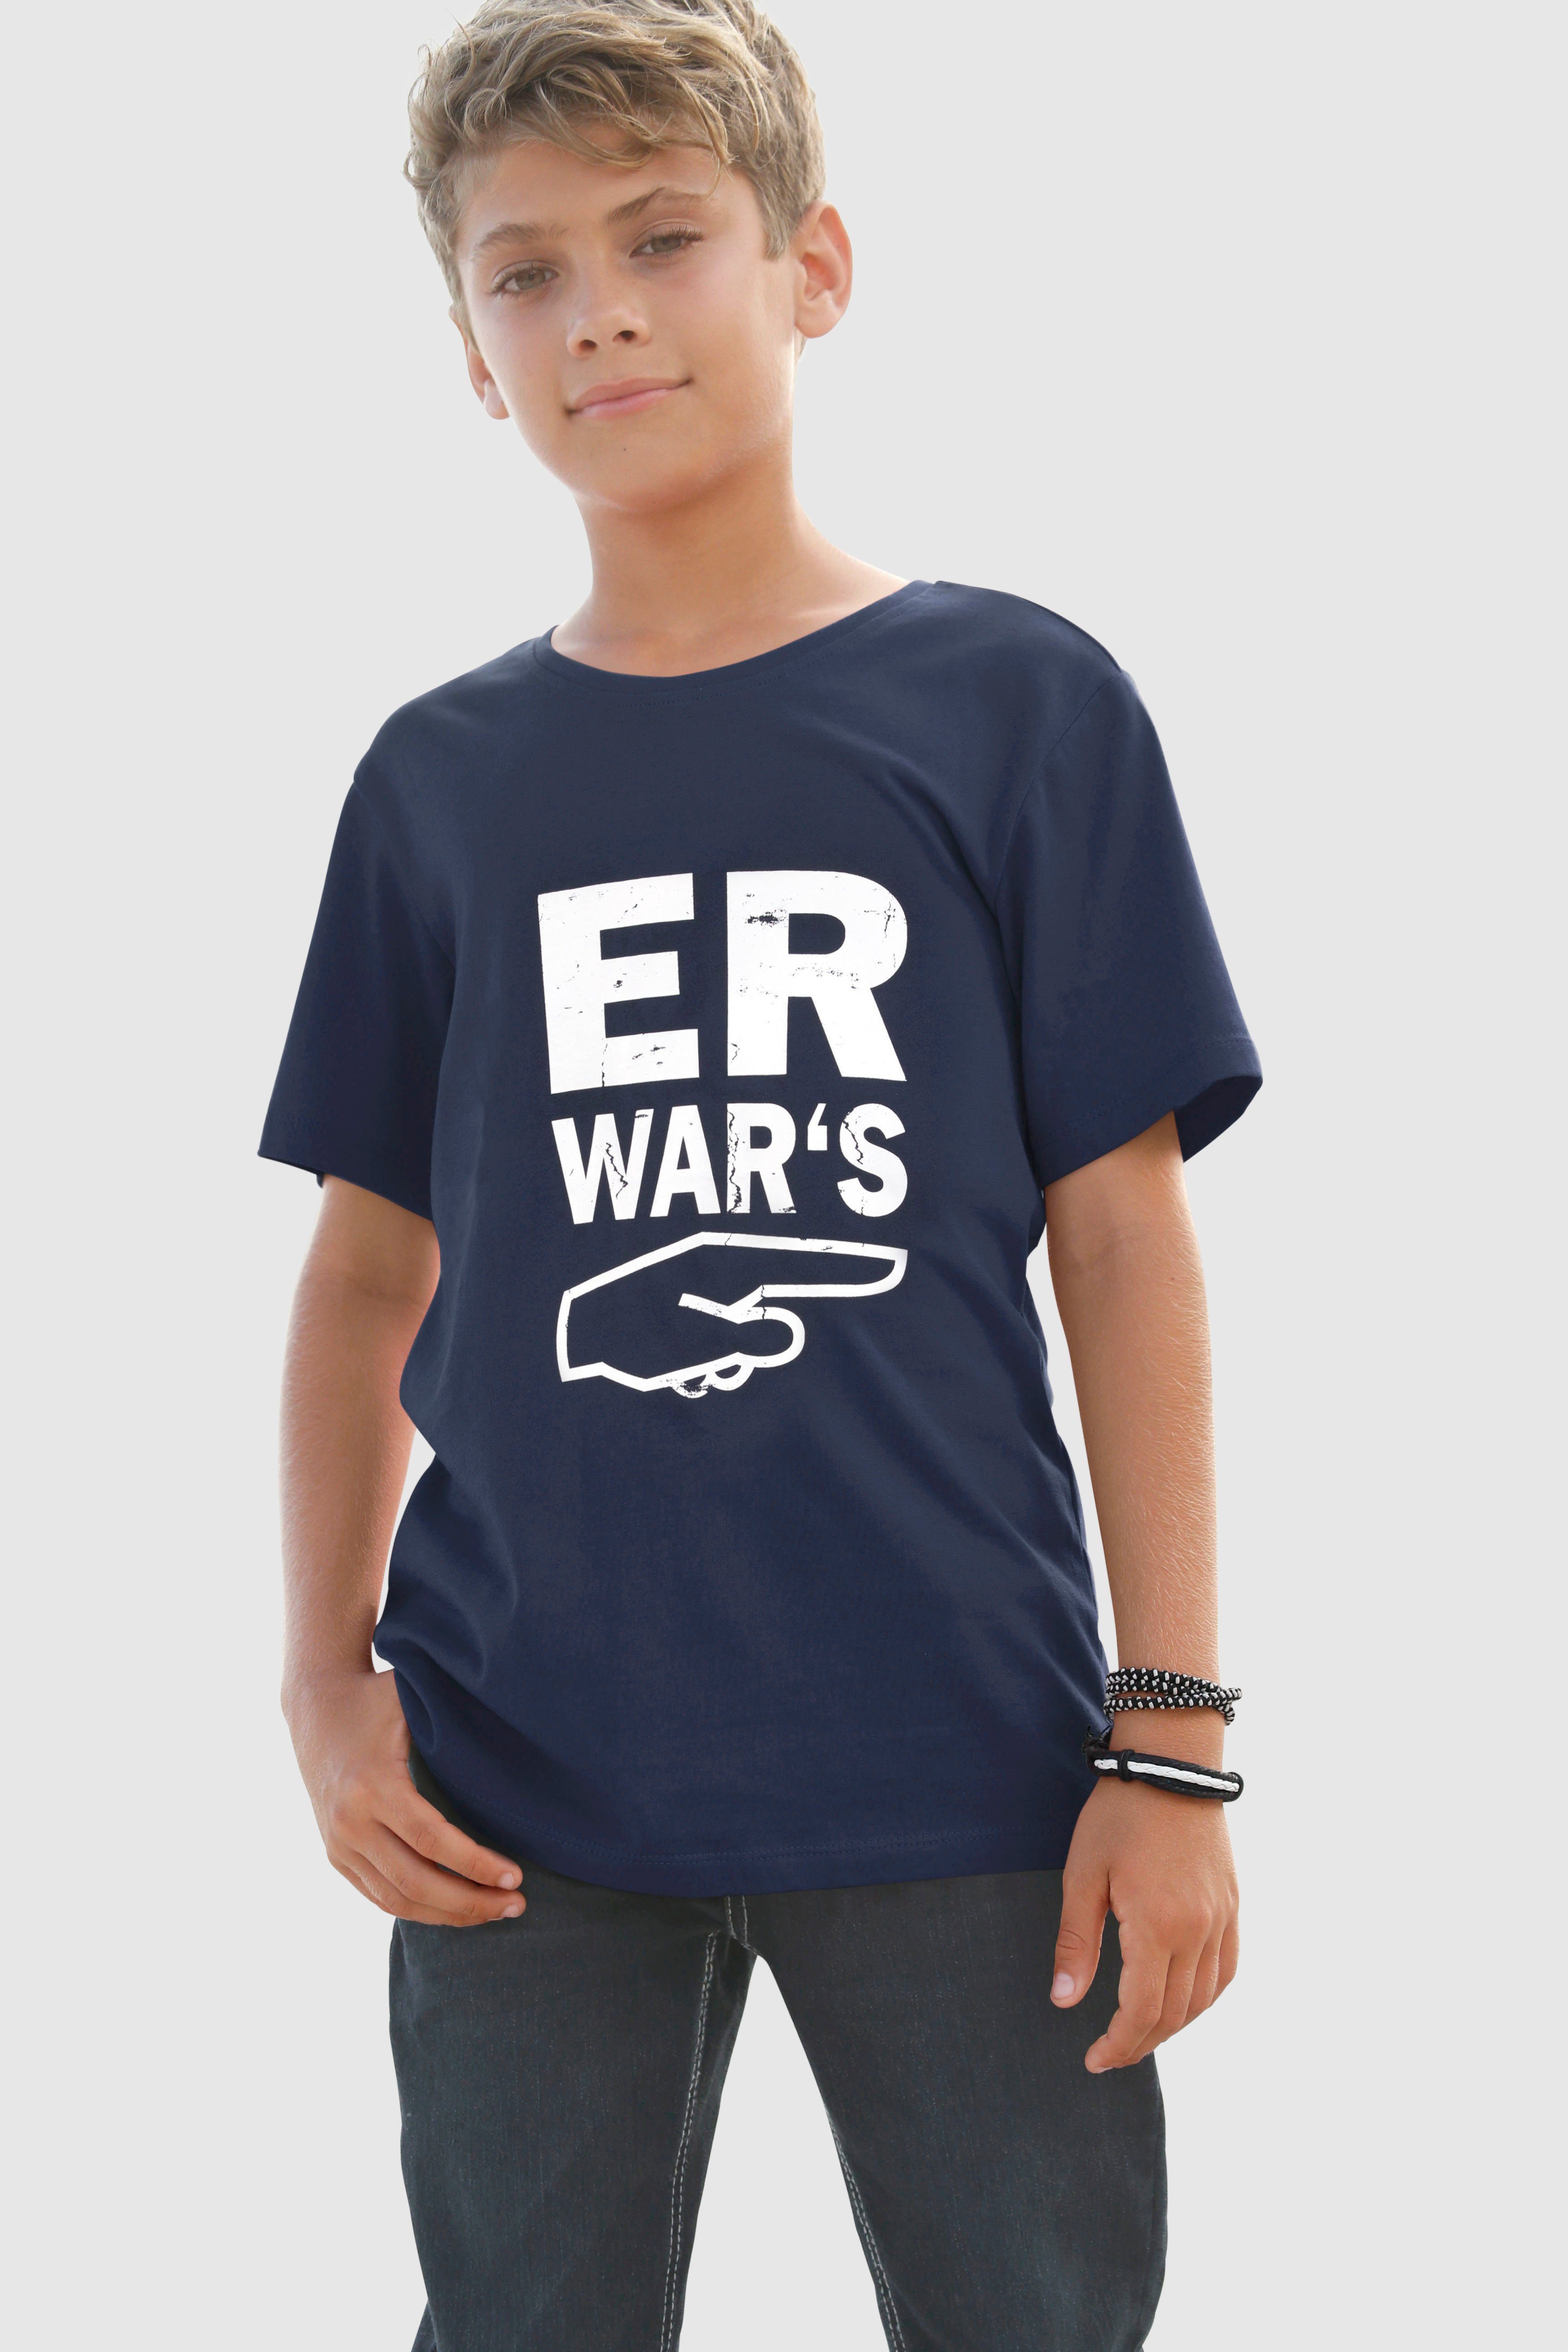 KIDSWORLD T-Shirt ER WAR`S, Spruch, T-Shirt von Arizona für Jungen